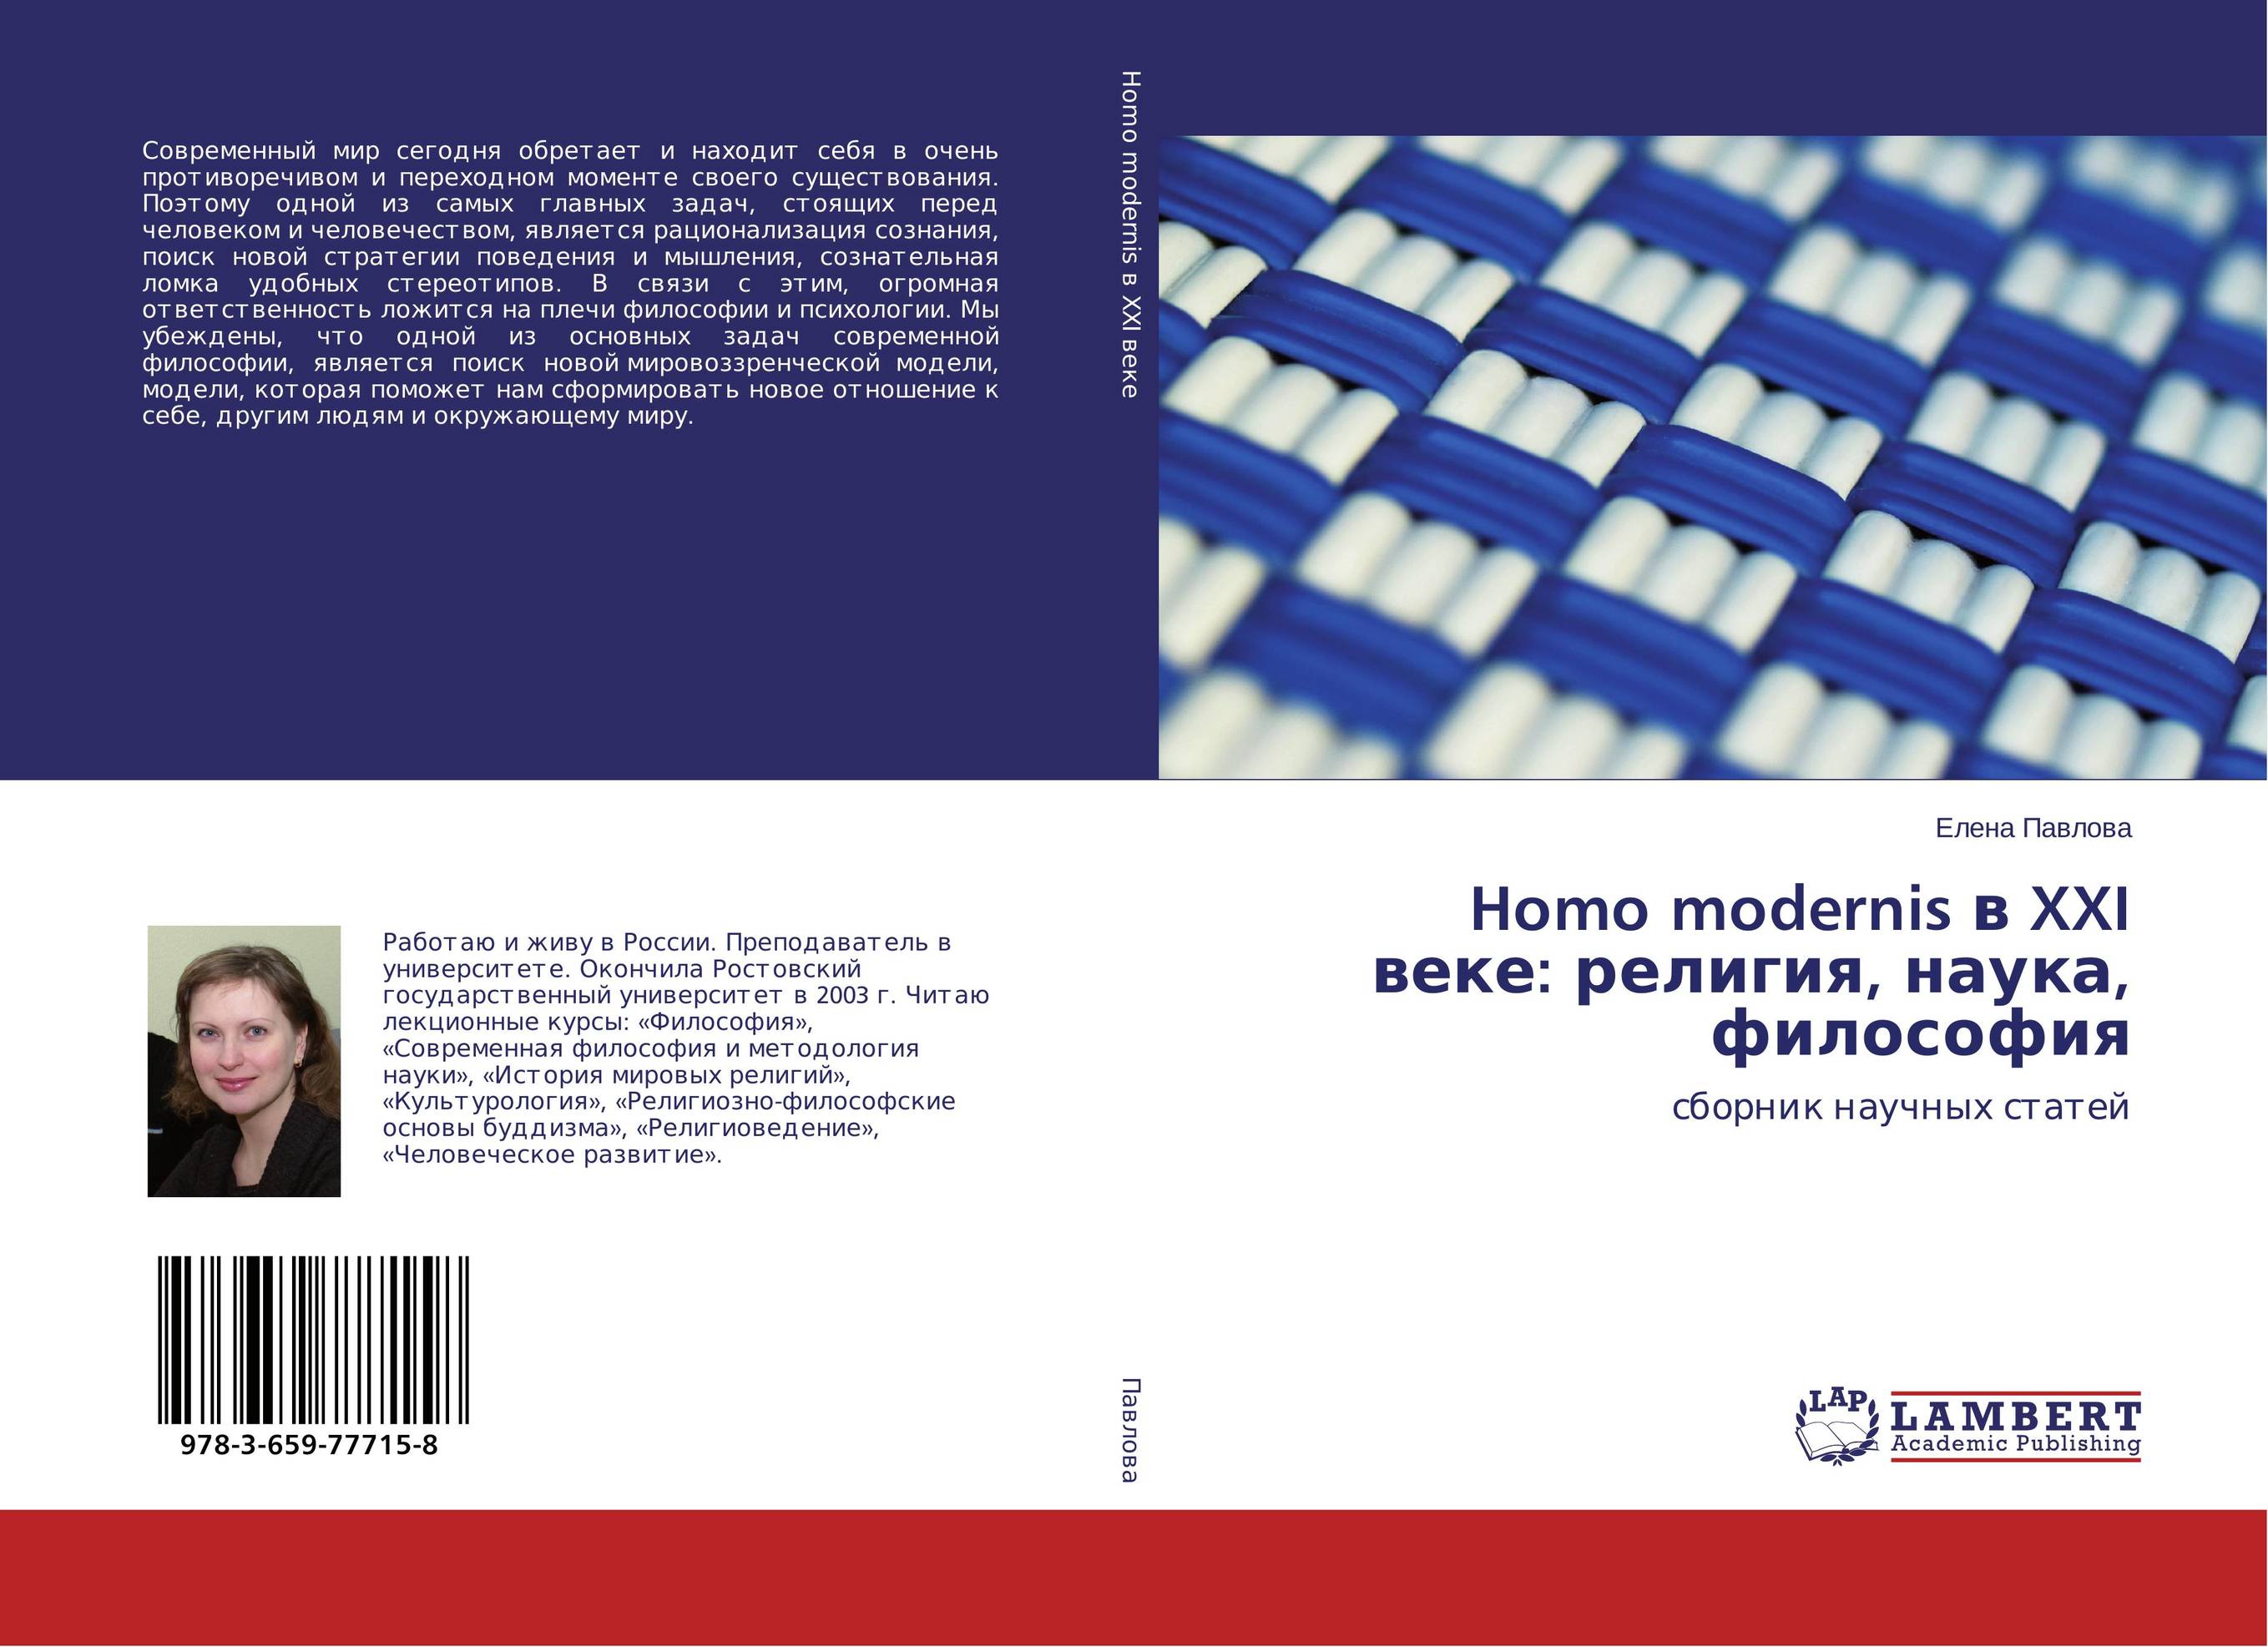 Homo modernis в XXI веке: религия, наука, философия. Сборник научных статей.